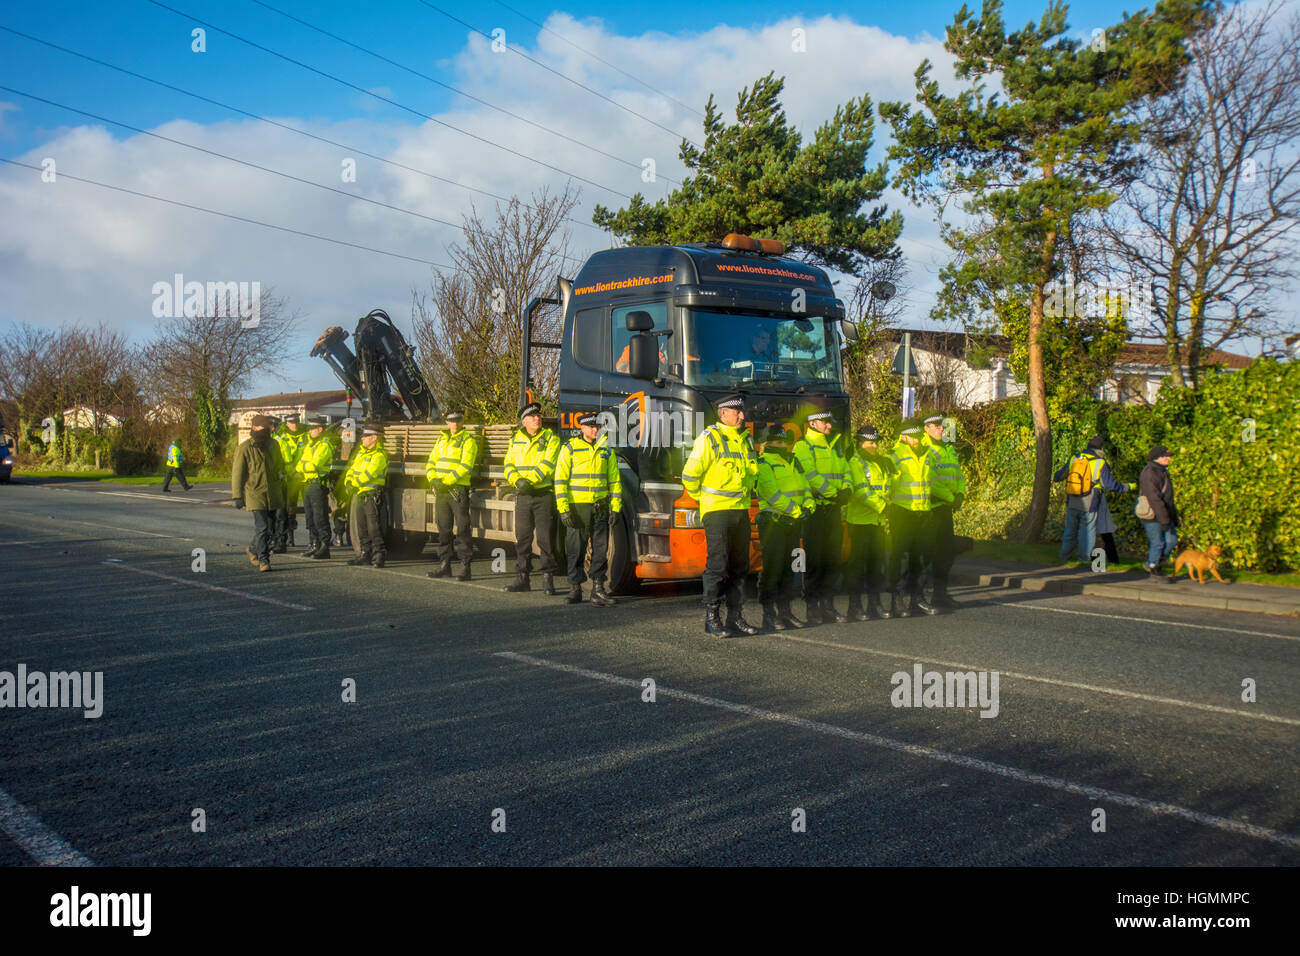 Blackpool, Royaume-Uni. 11 janvier 2017. Un petit groupe de manifestants détenus jusqu'antifracking une livraison de matériel être livrés à Cuadrilla gaz de schiste controversée de la fracturation hydraulique sur site Preston New Road, près de Blackpool Plumpton peu lorsqu'ils ont bloqué la voie en direction est à marche lente le camion au site d'environ un mille plus loin sur la route. Les manifestants sont arrivés vers 09:00 heures et est demeuré à l'avant du camion avec la police locale dans l'assistance. Crédit : Dave Ellison/Alamy Live News Banque D'Images